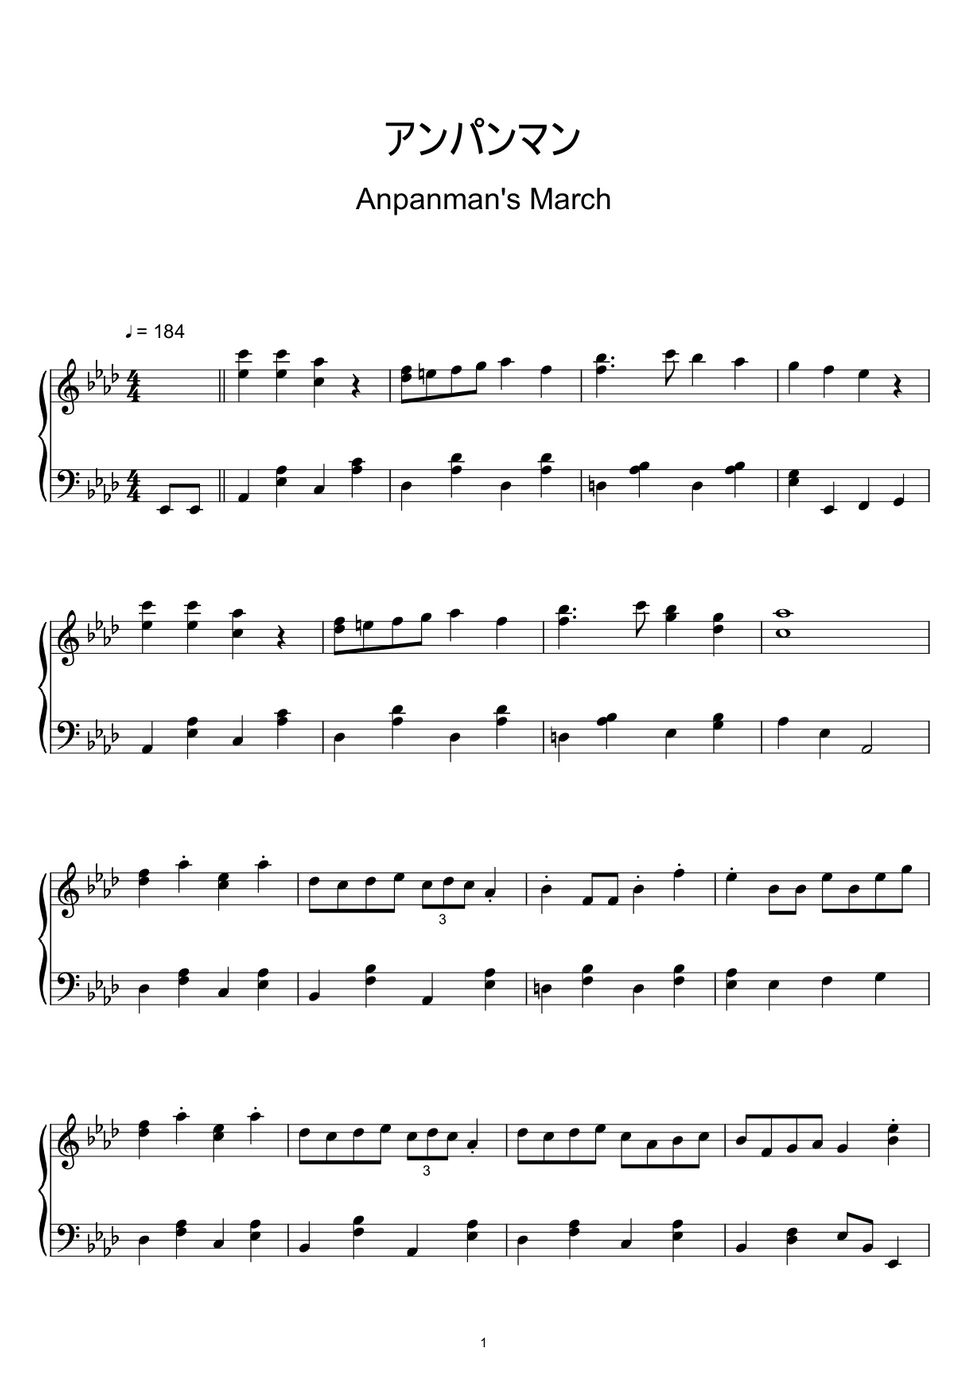 アンパンマン - アンパンマン (Anpanman Theme / Anpanman's March) (Sheet Music, MIDI,) by sayu